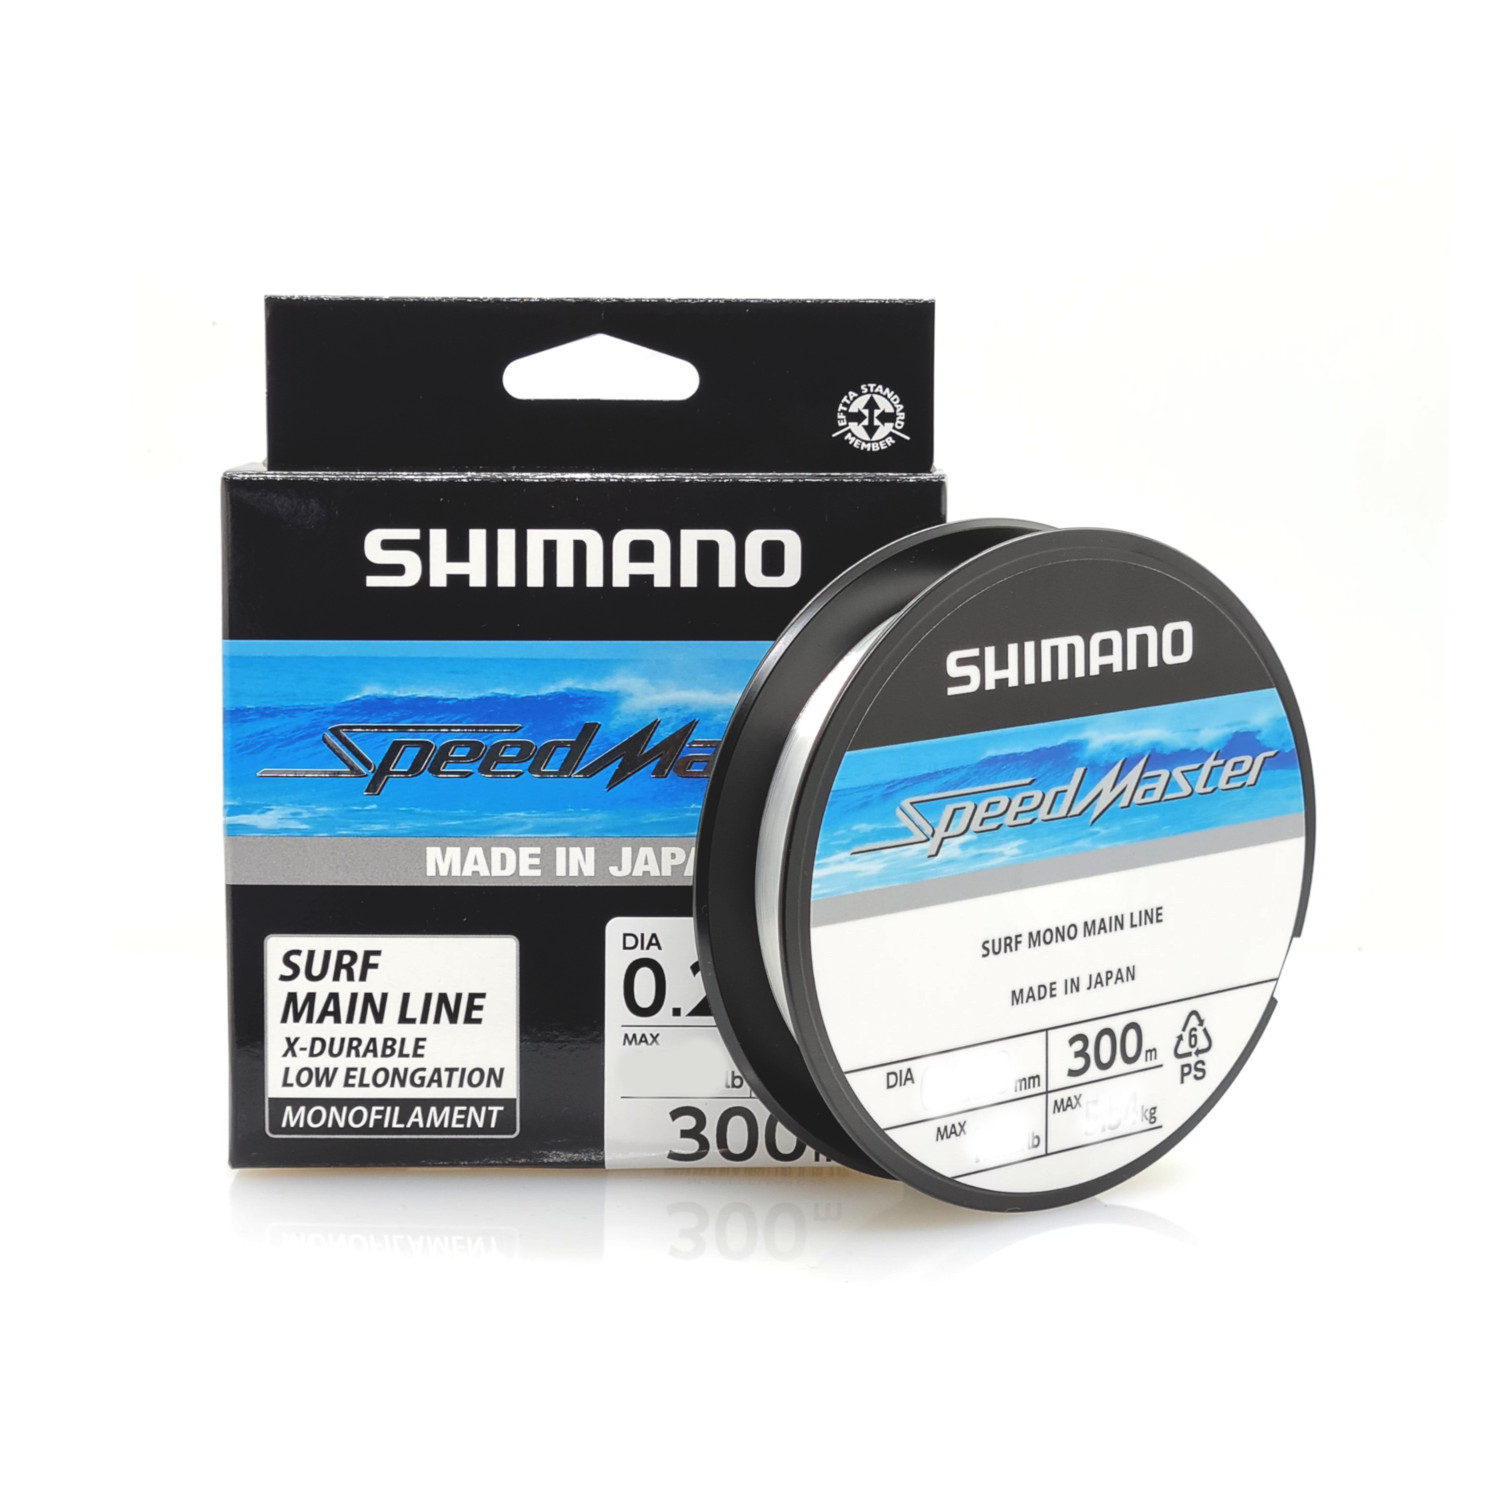 Μισινέζα SHIMANO SpeedMaster Surf 300m 0.25mm